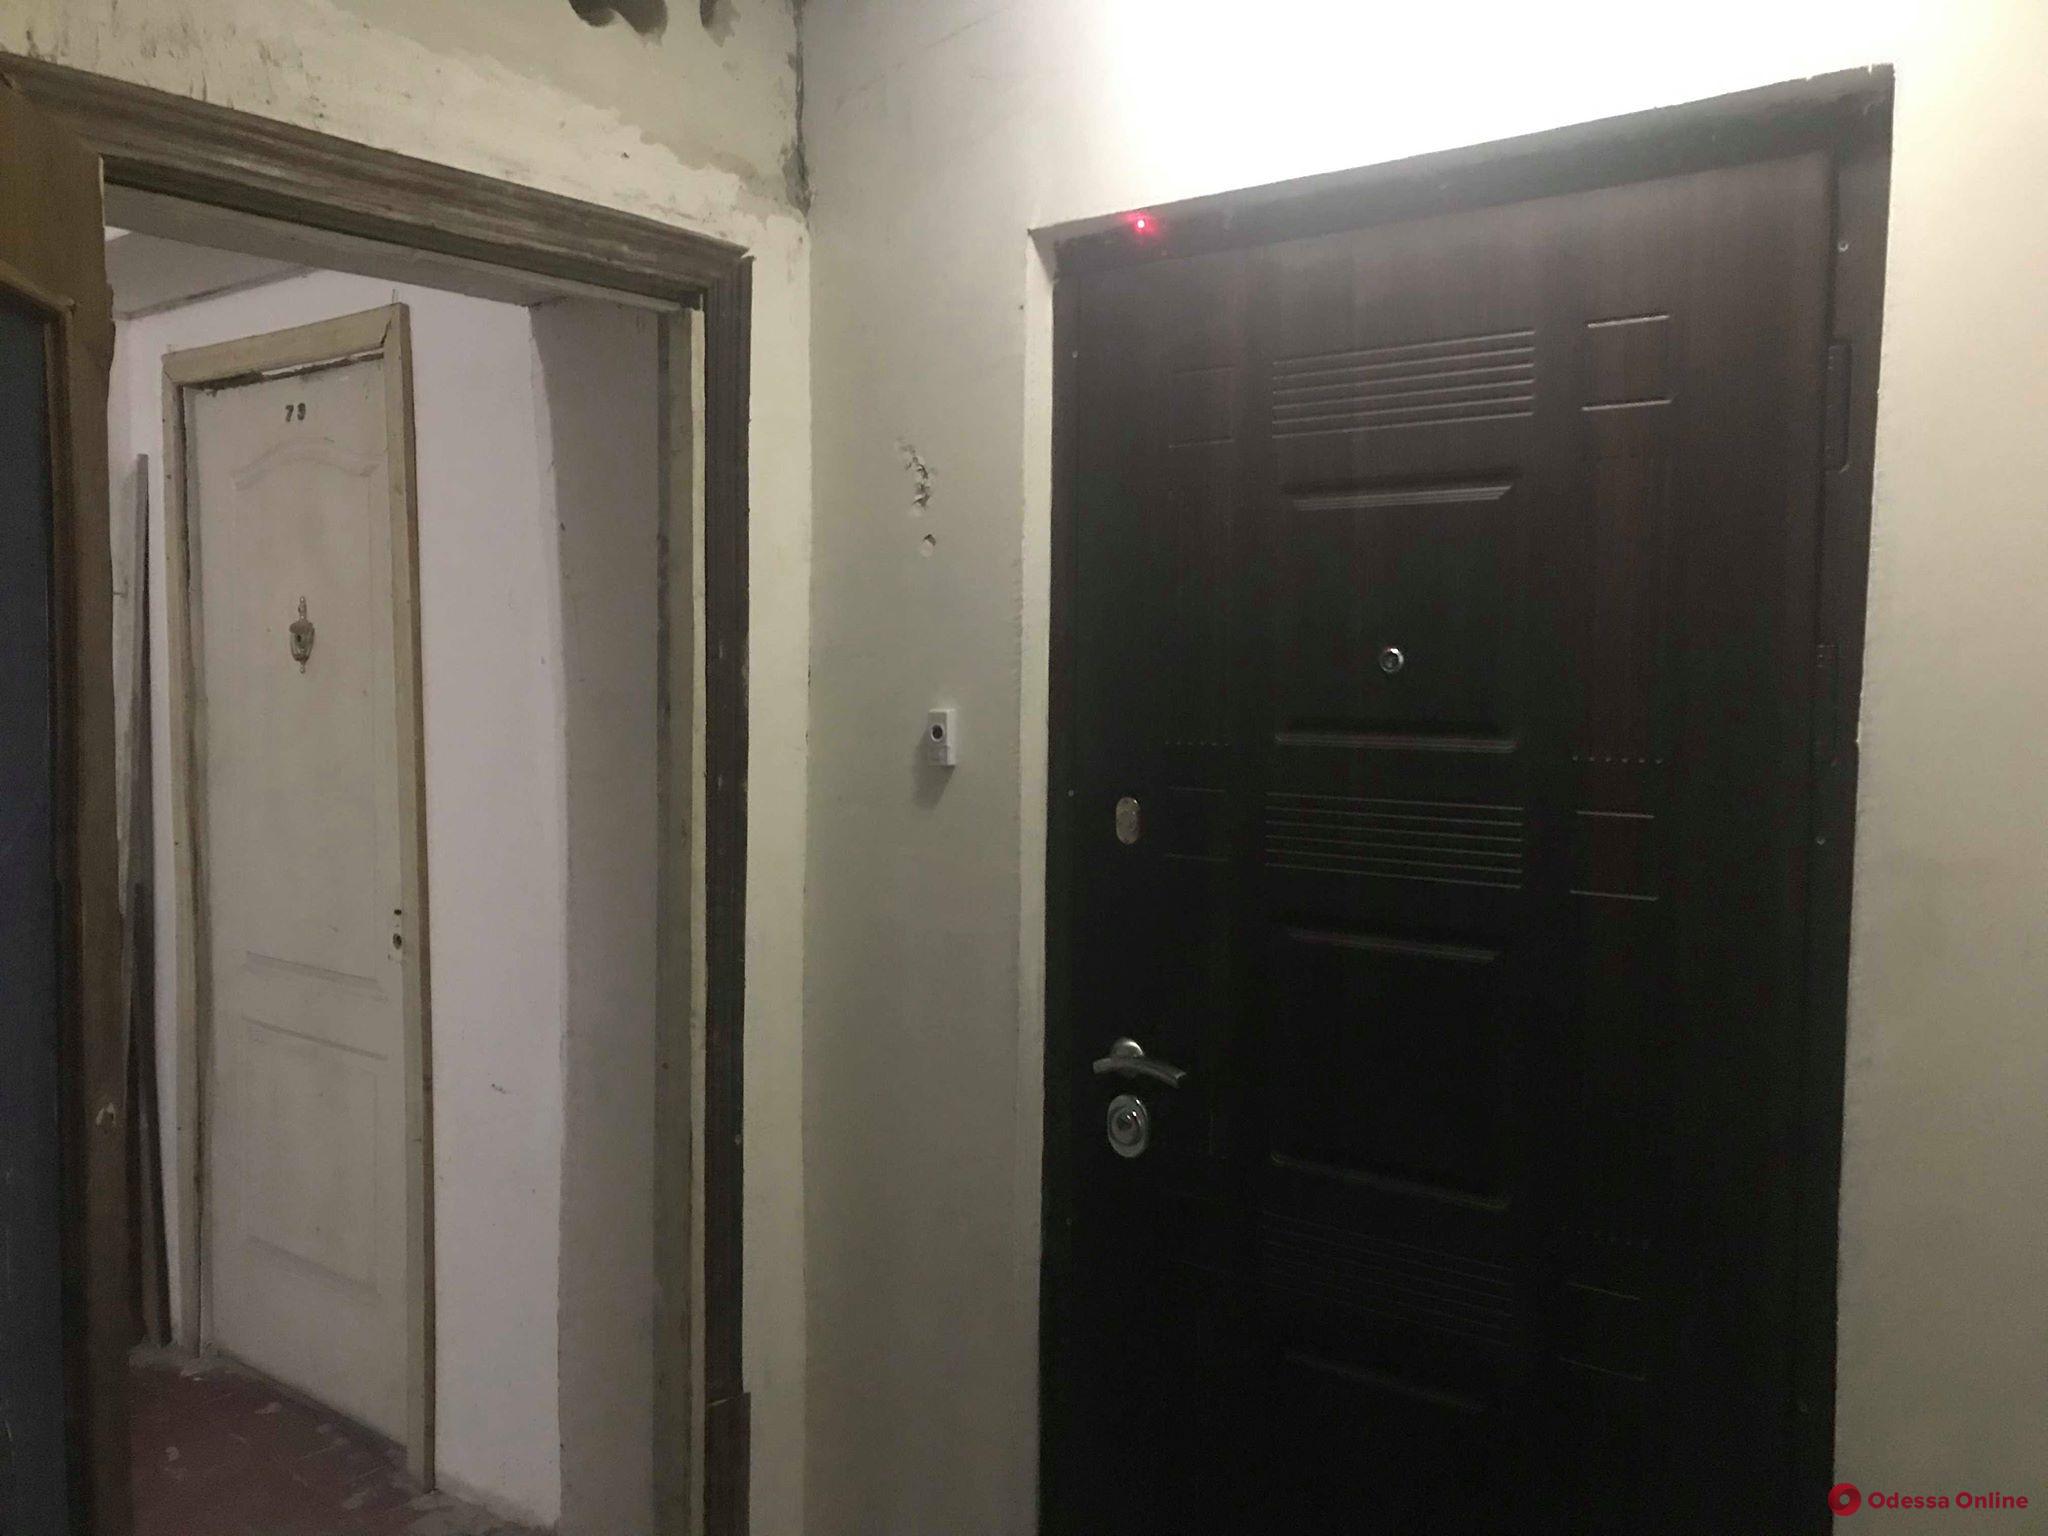 Житель одесской многоэтажки заблокировал пожарную лестницу ради расширения квартиры